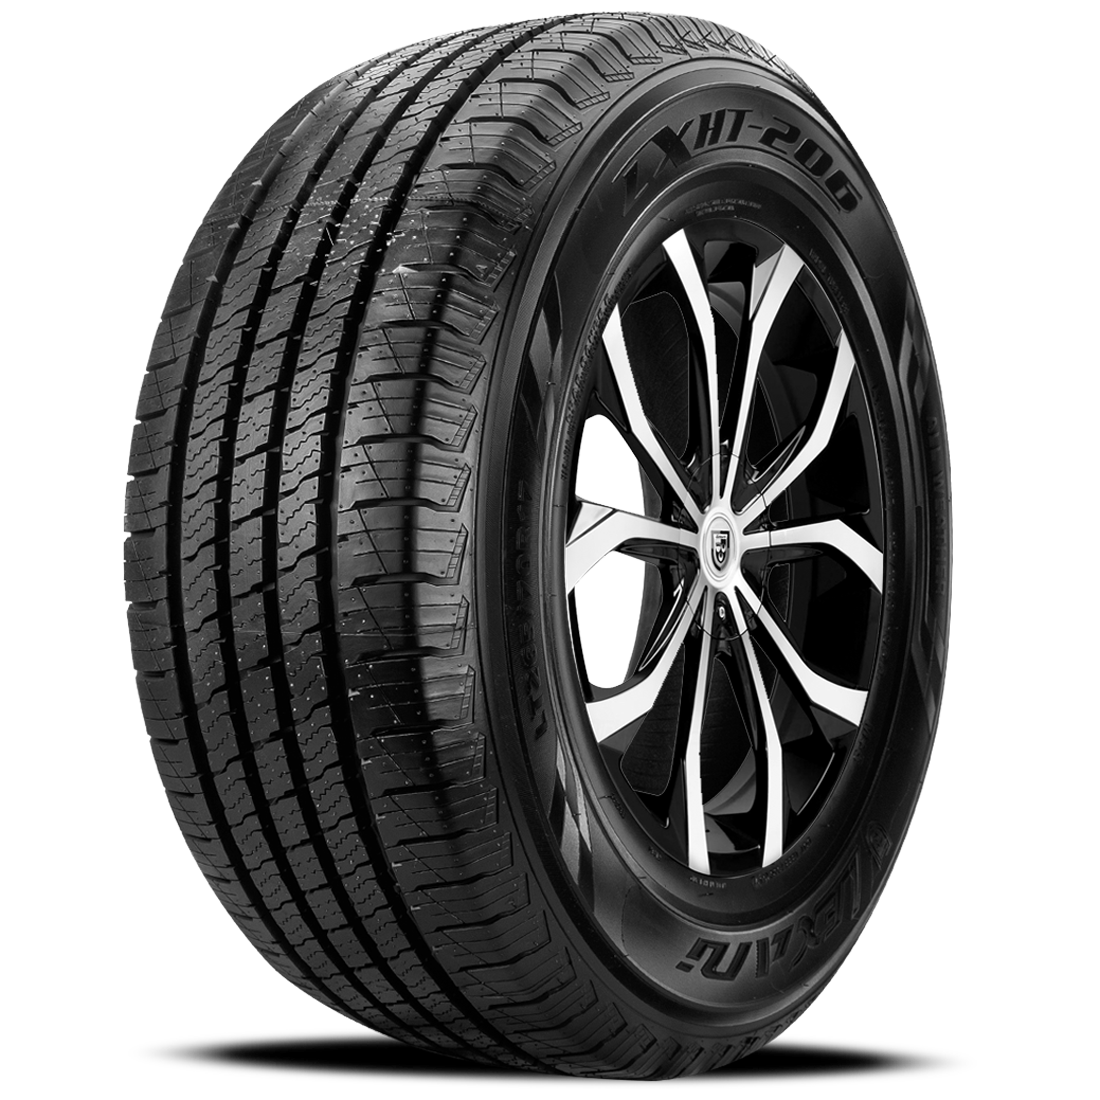 LEXANI LXHT-206 P215/70R16 (27.9X8.5R 16) Tires